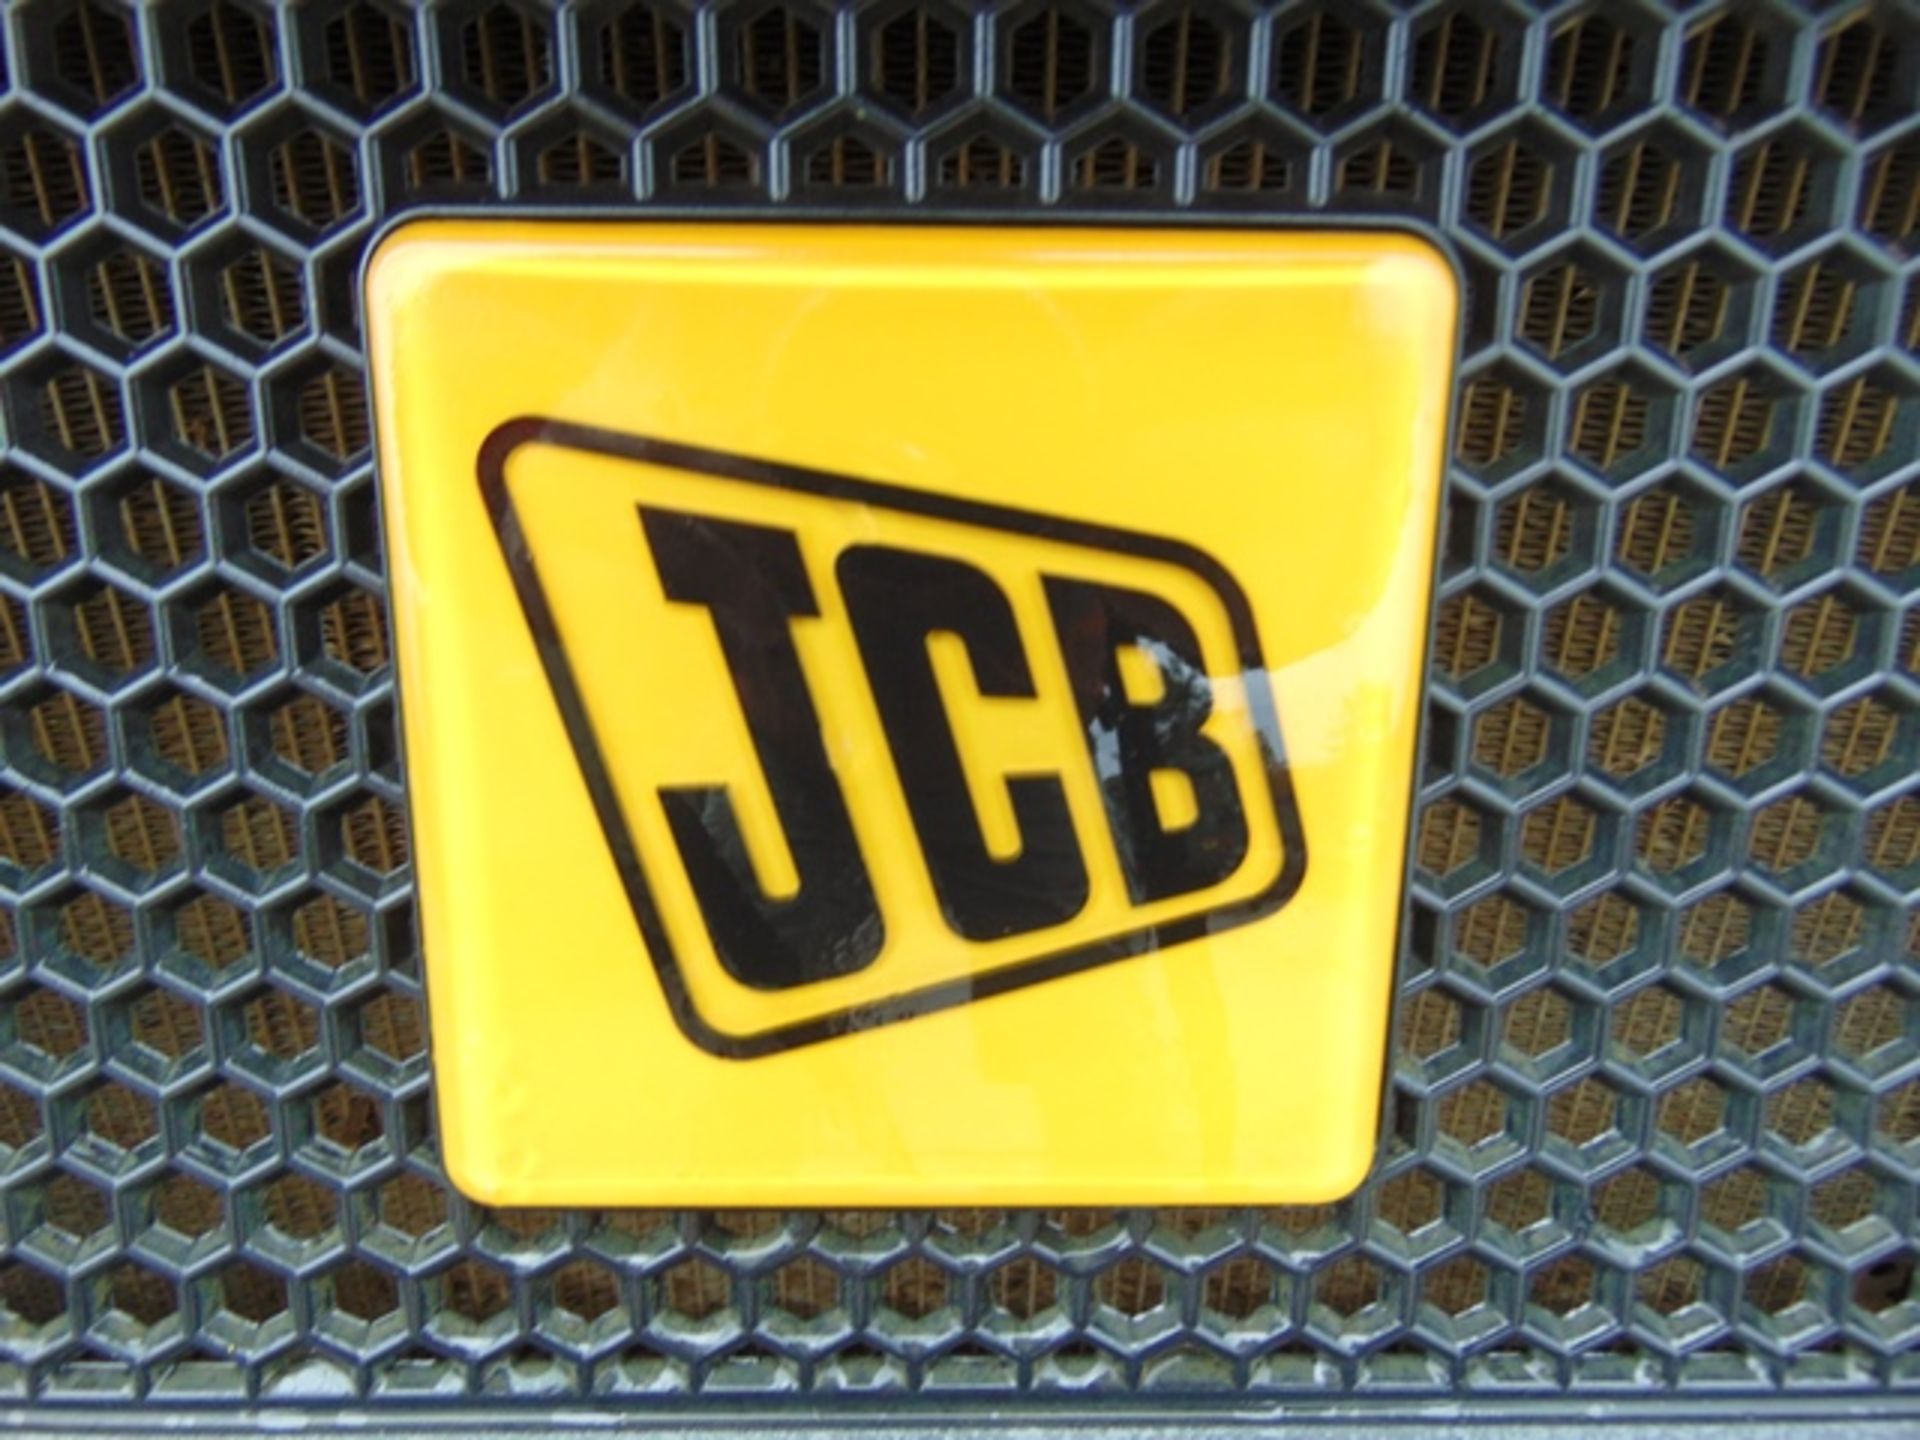 2015 JCB Workmax 4WD Diesel Utility Vehicle UTV - Image 12 of 18